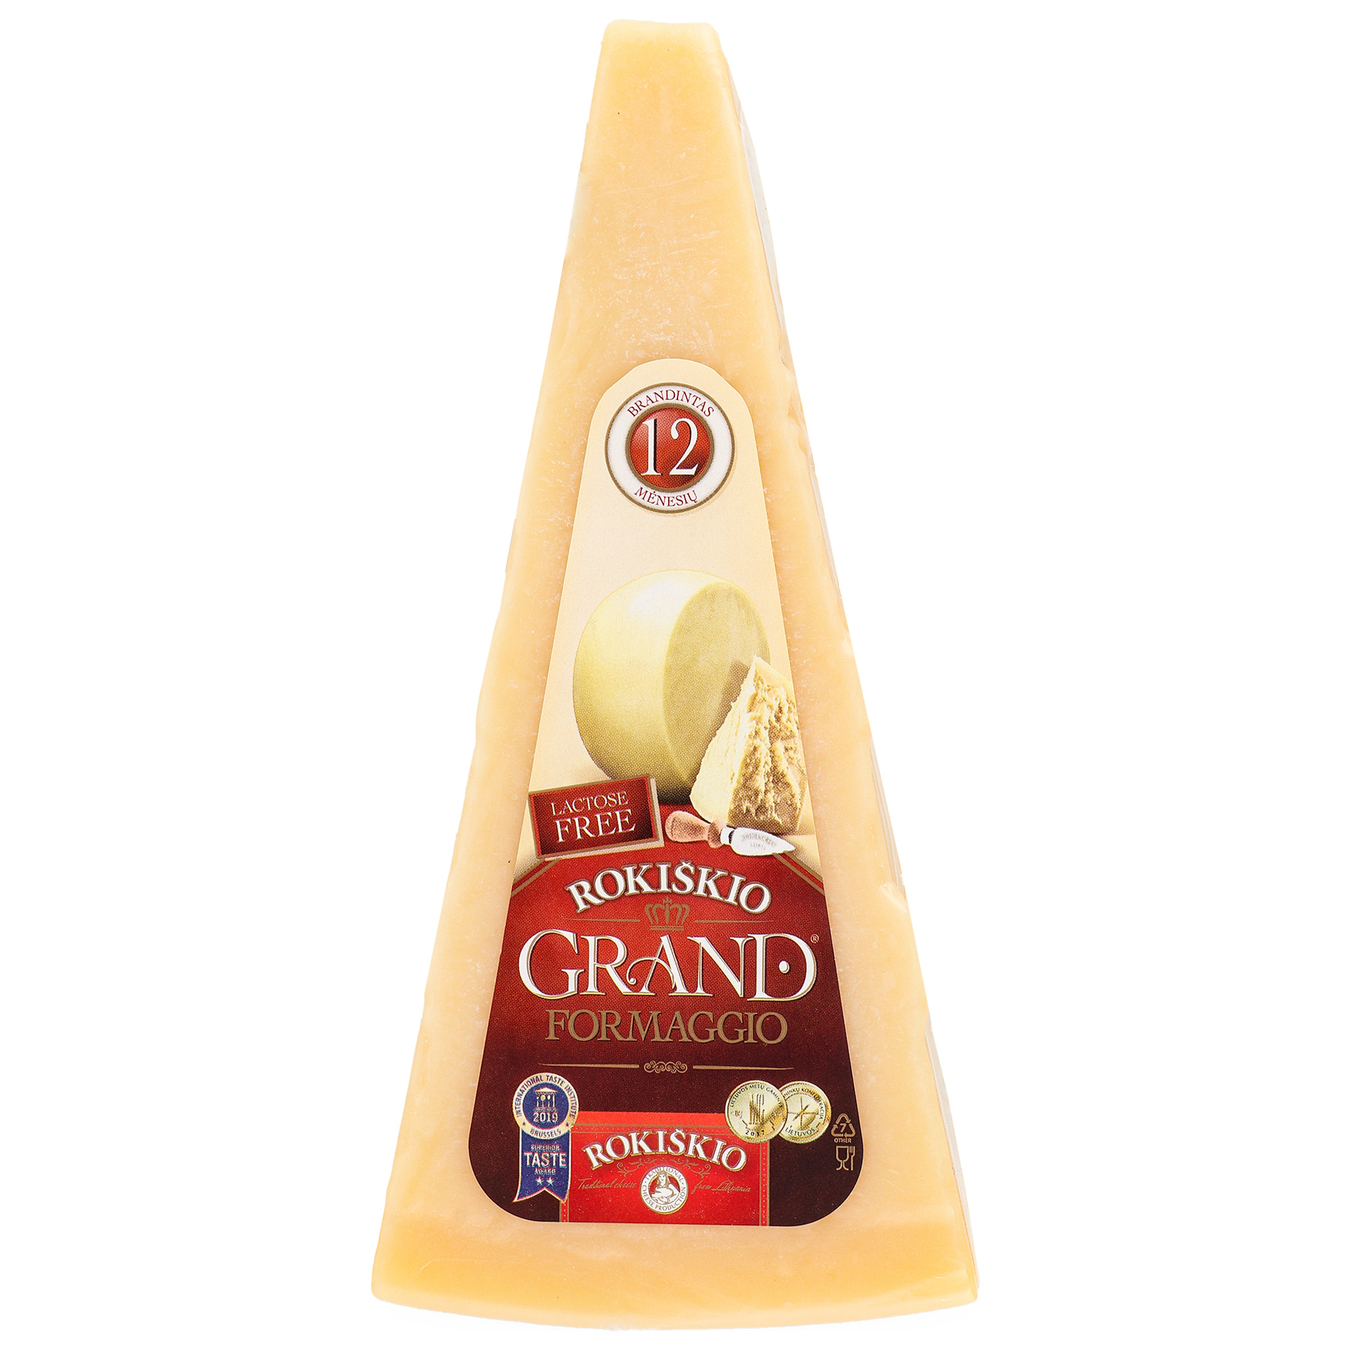 Grand Rokiskio hard cheese 37% 180g